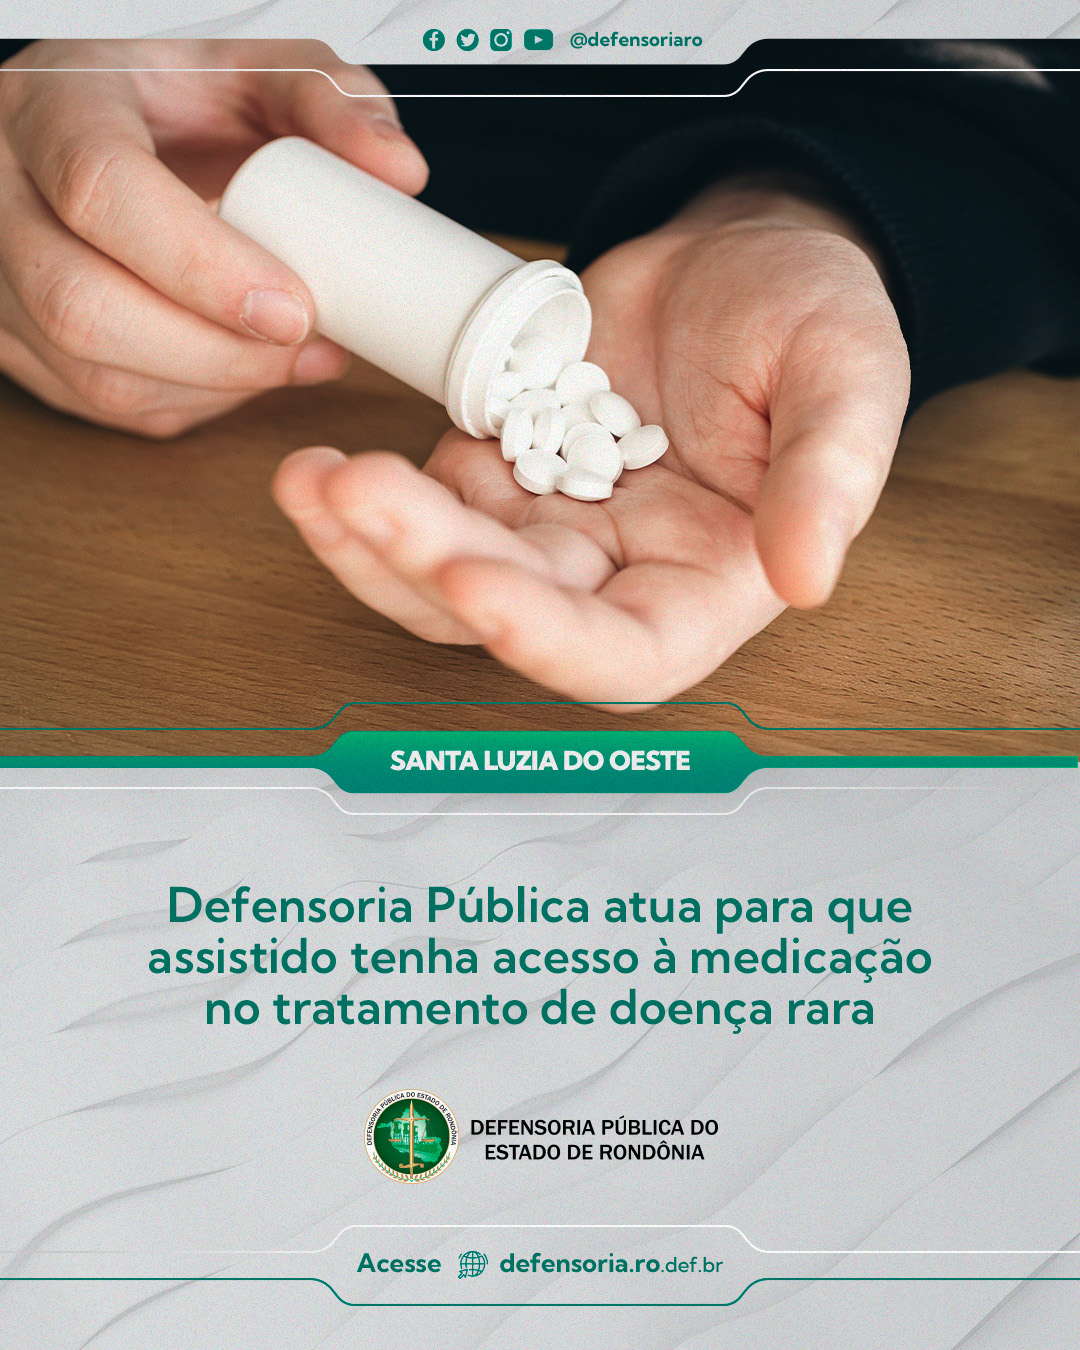 Santa Luzia do Oeste: Defensoria Pública atua para que assistido tenha acesso à medicação no tratamento de doença rara